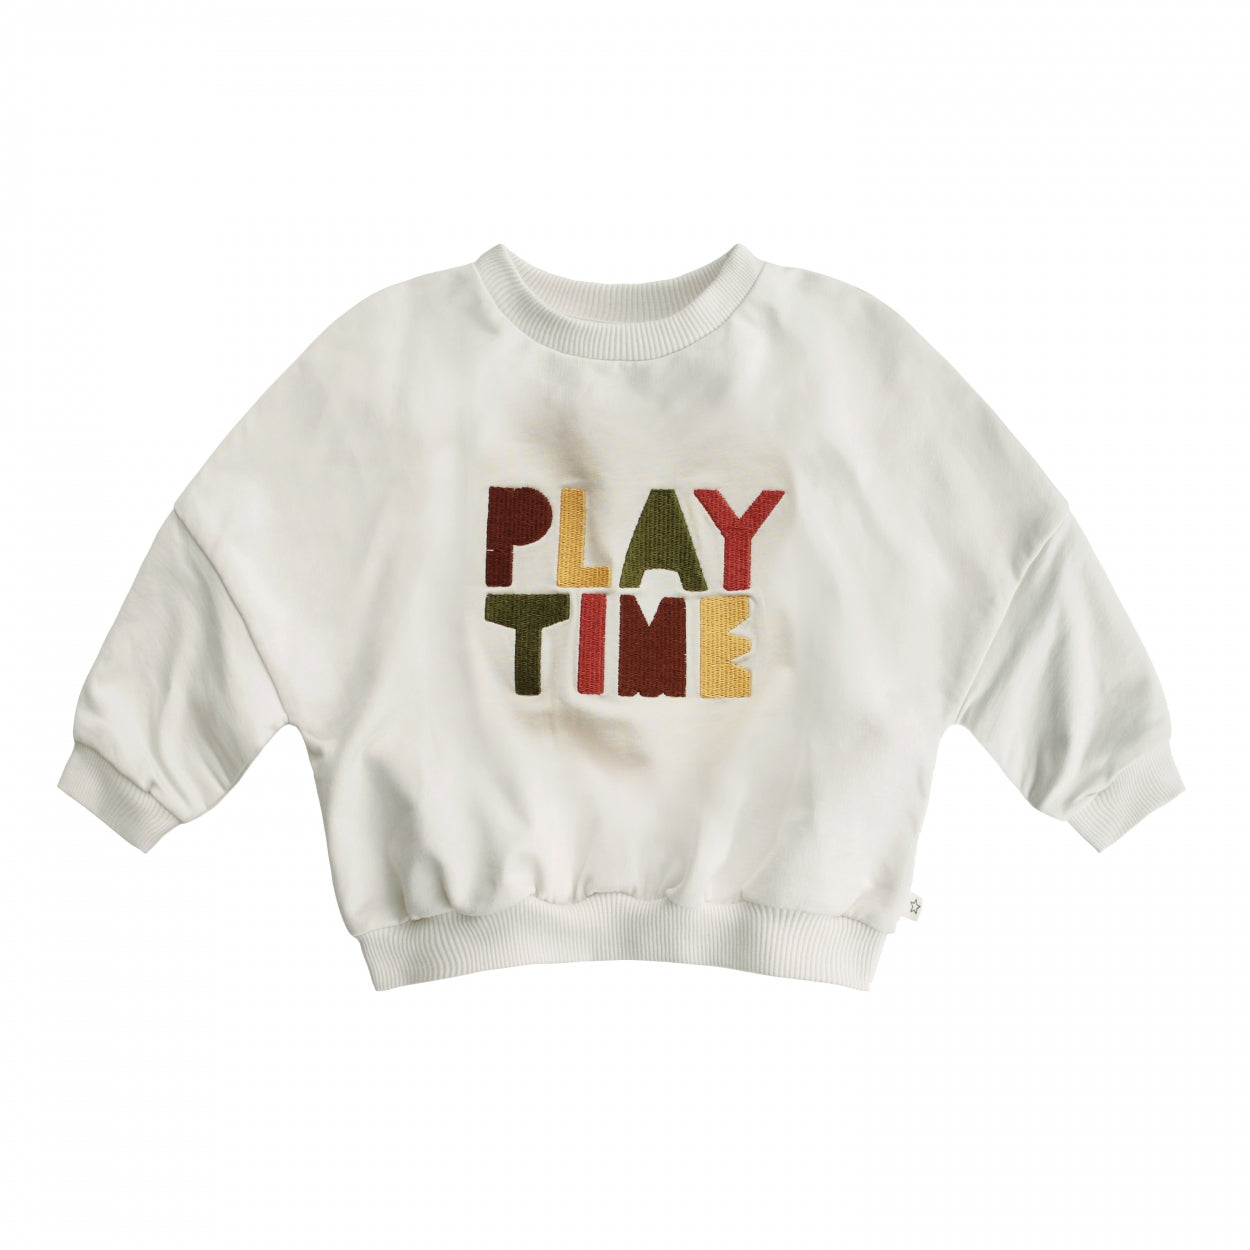 Meisjes Sweater Play Time | Nio van Your Wishes in de kleur Ivory in maat 92.